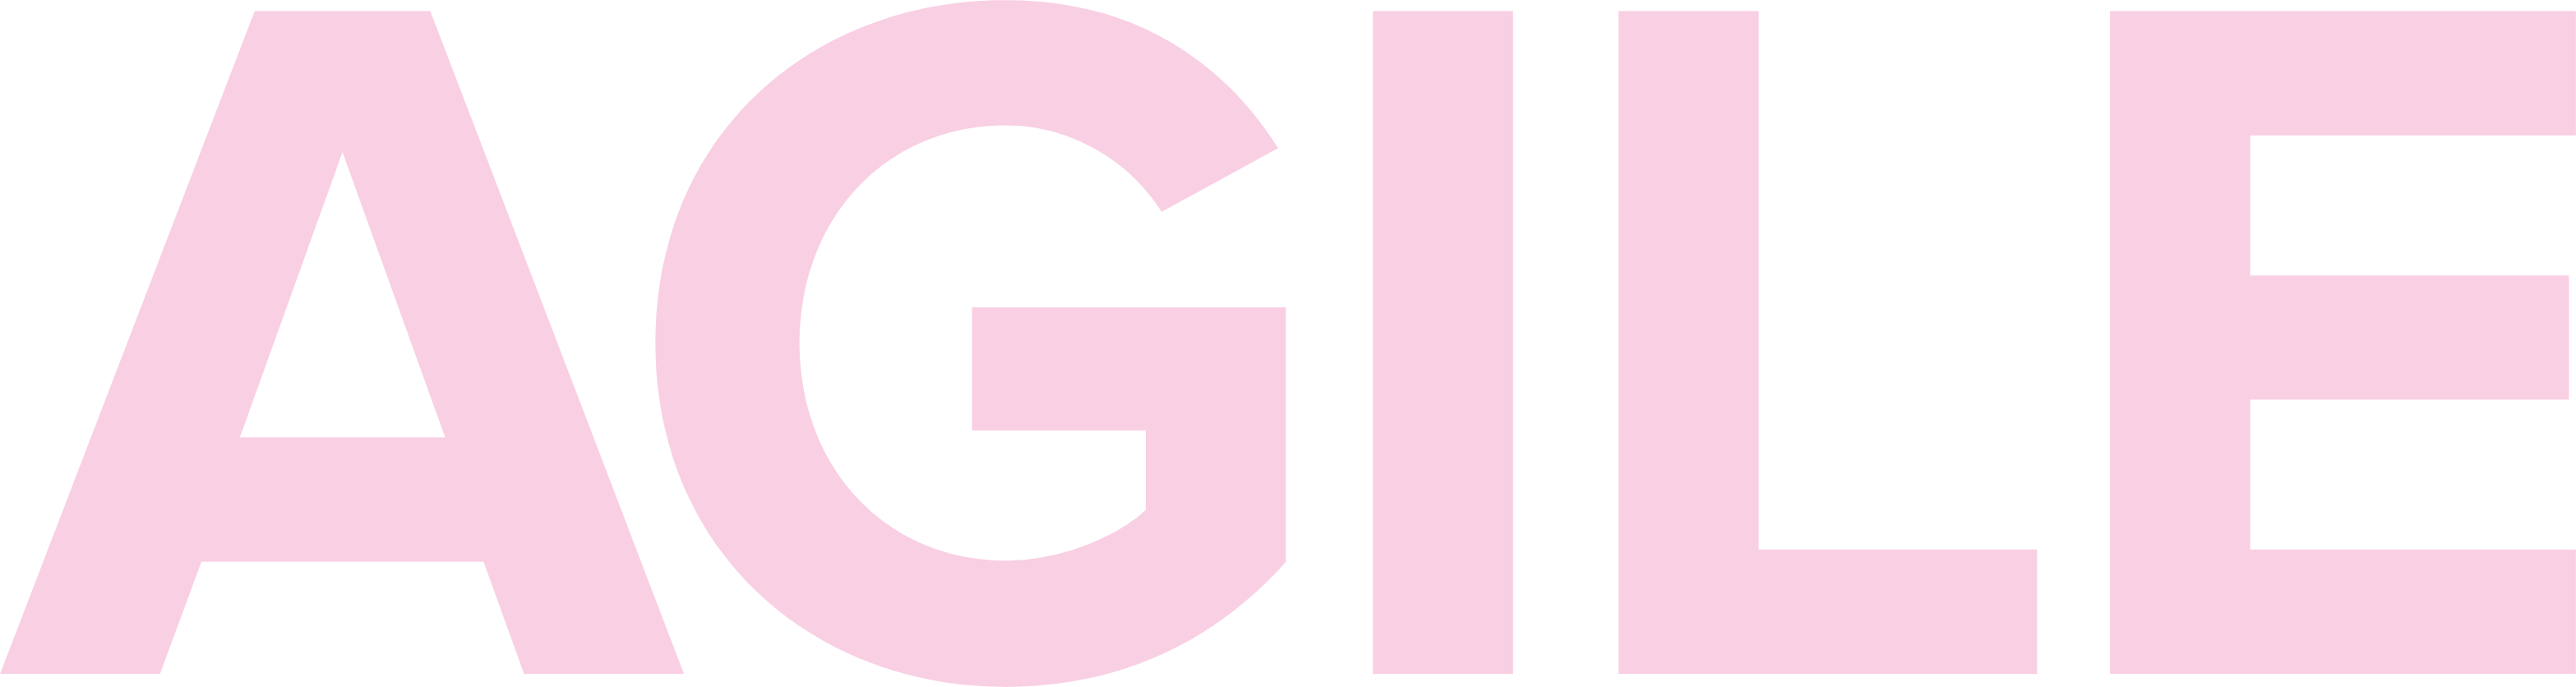 AGILE title logo